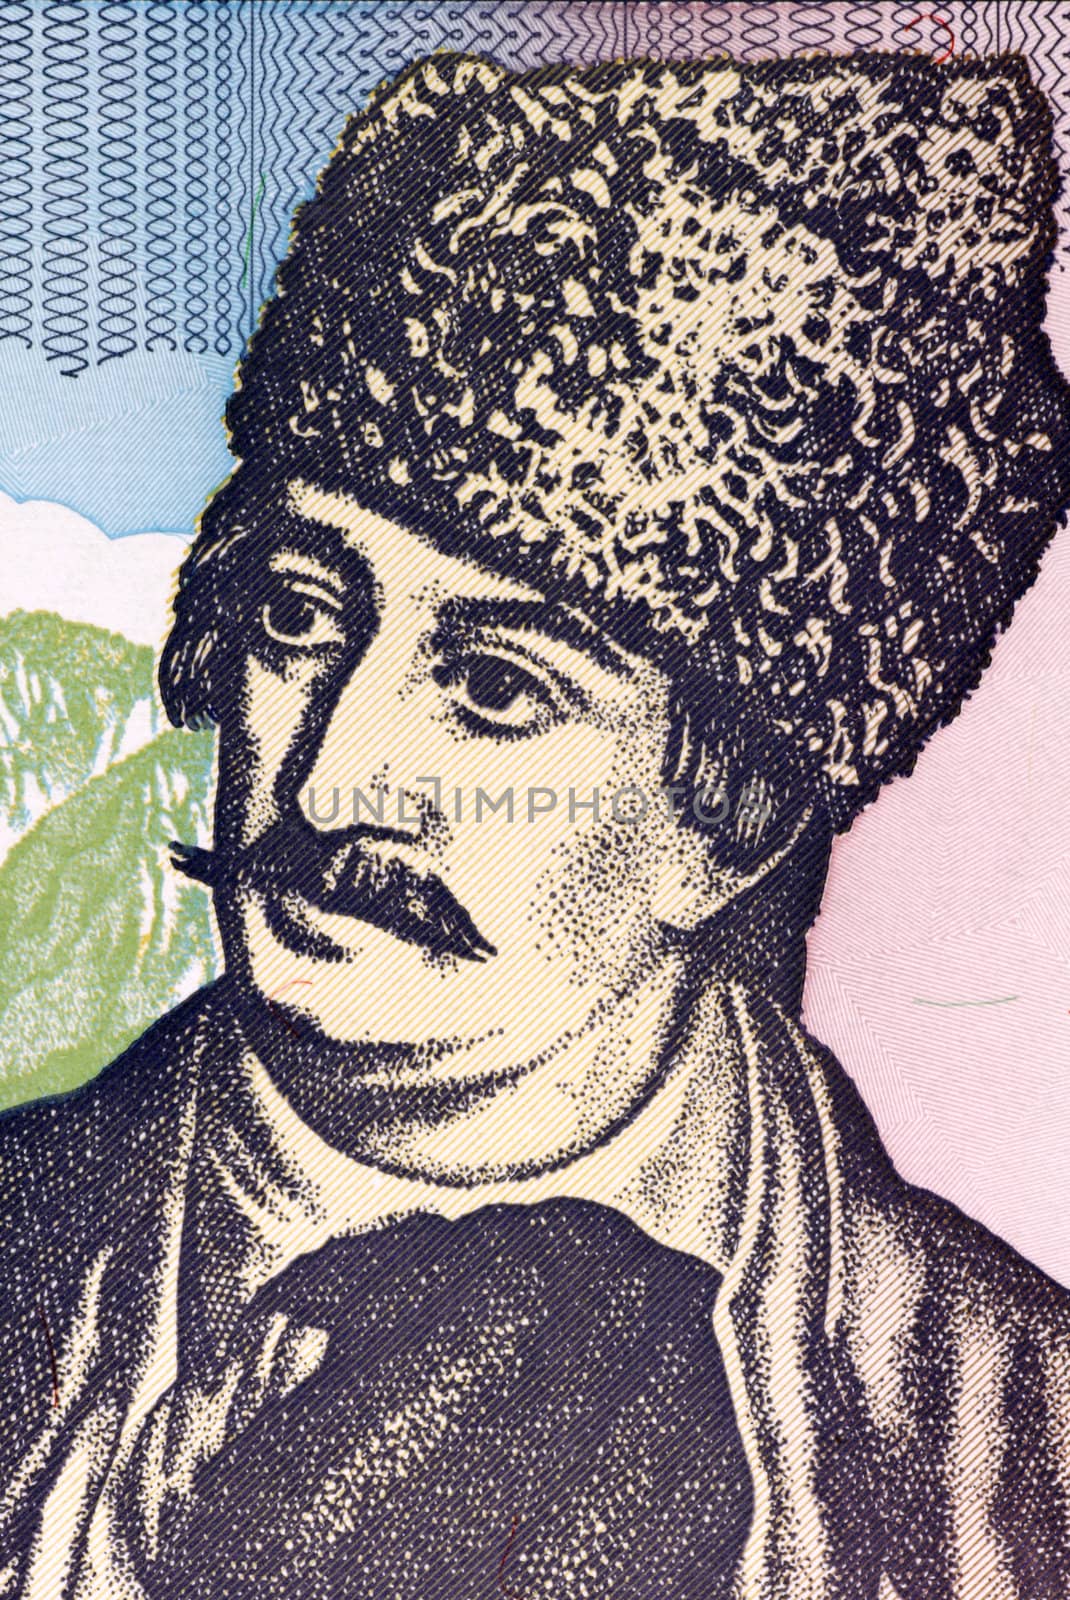 Avram Iancu  by Georgios